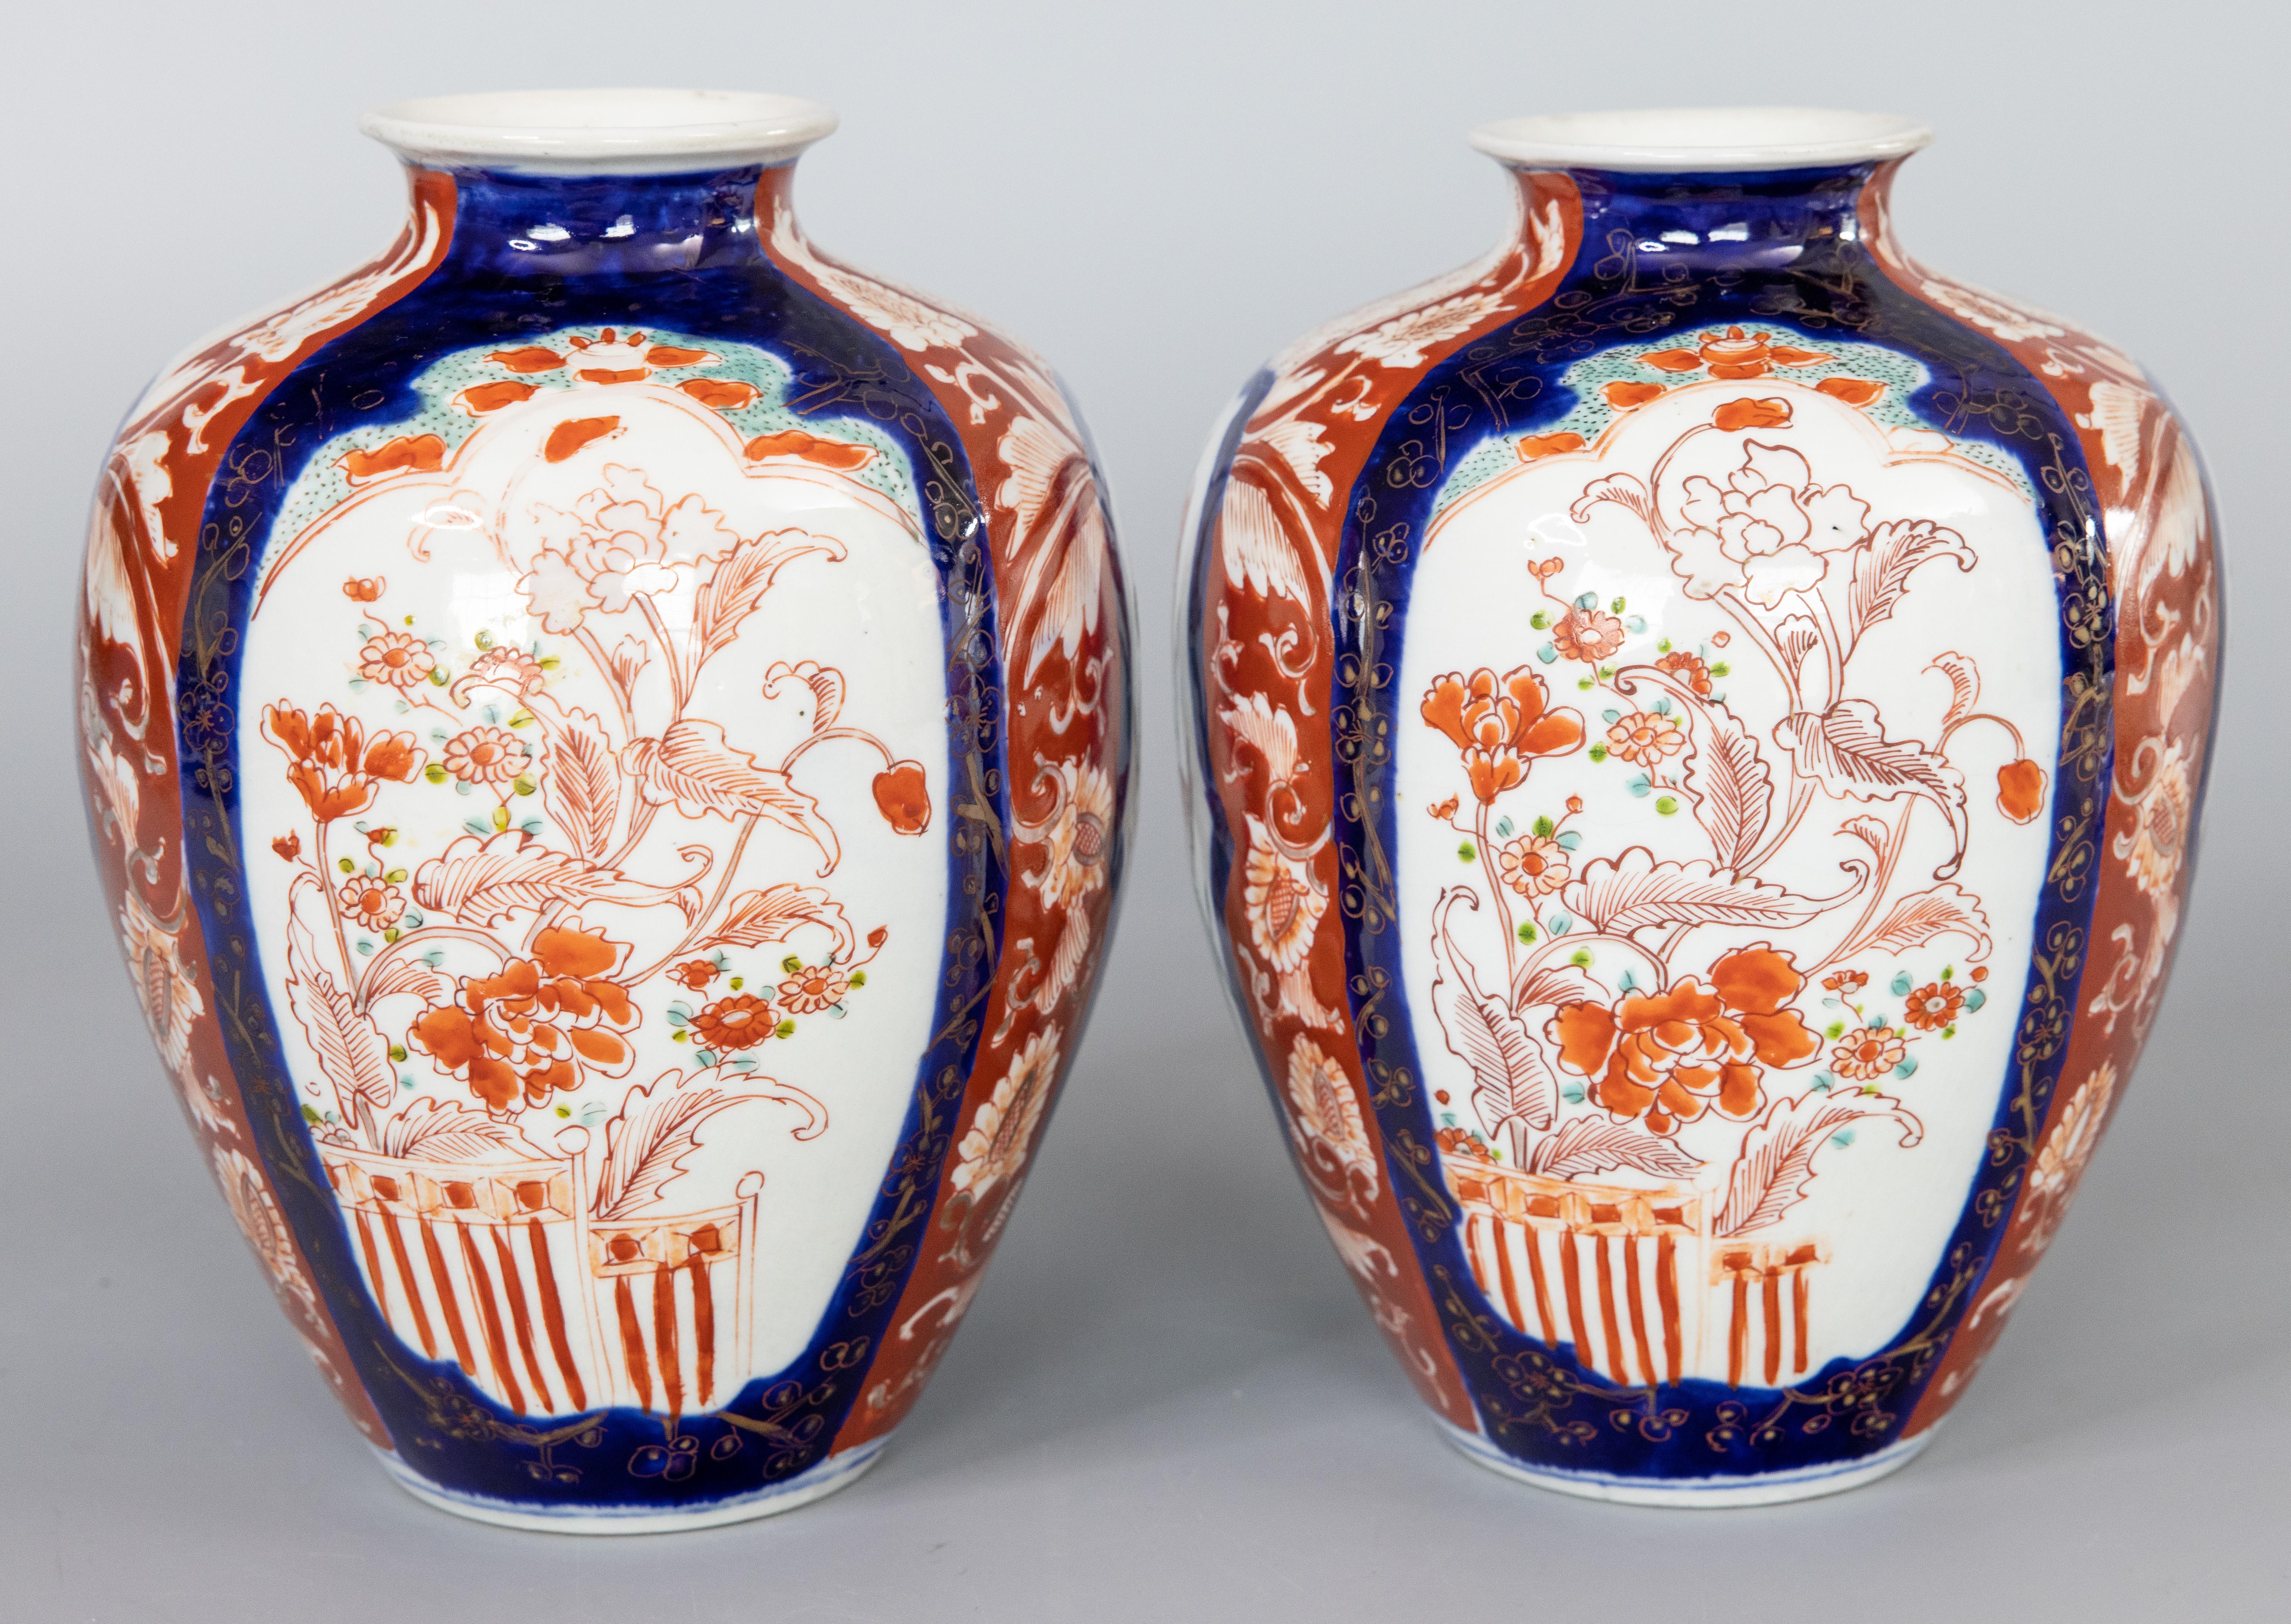 Ein wunderschönes Paar japanischer Imari-Porzellanvasen aus dem 19. Jahrhundert. Diese feinen Vasen haben eine schöne Form und ein handgemaltes Blumenmuster in den traditionellen Imari-Farben. Sie sind in schönem, antikem Zustand und würden sich